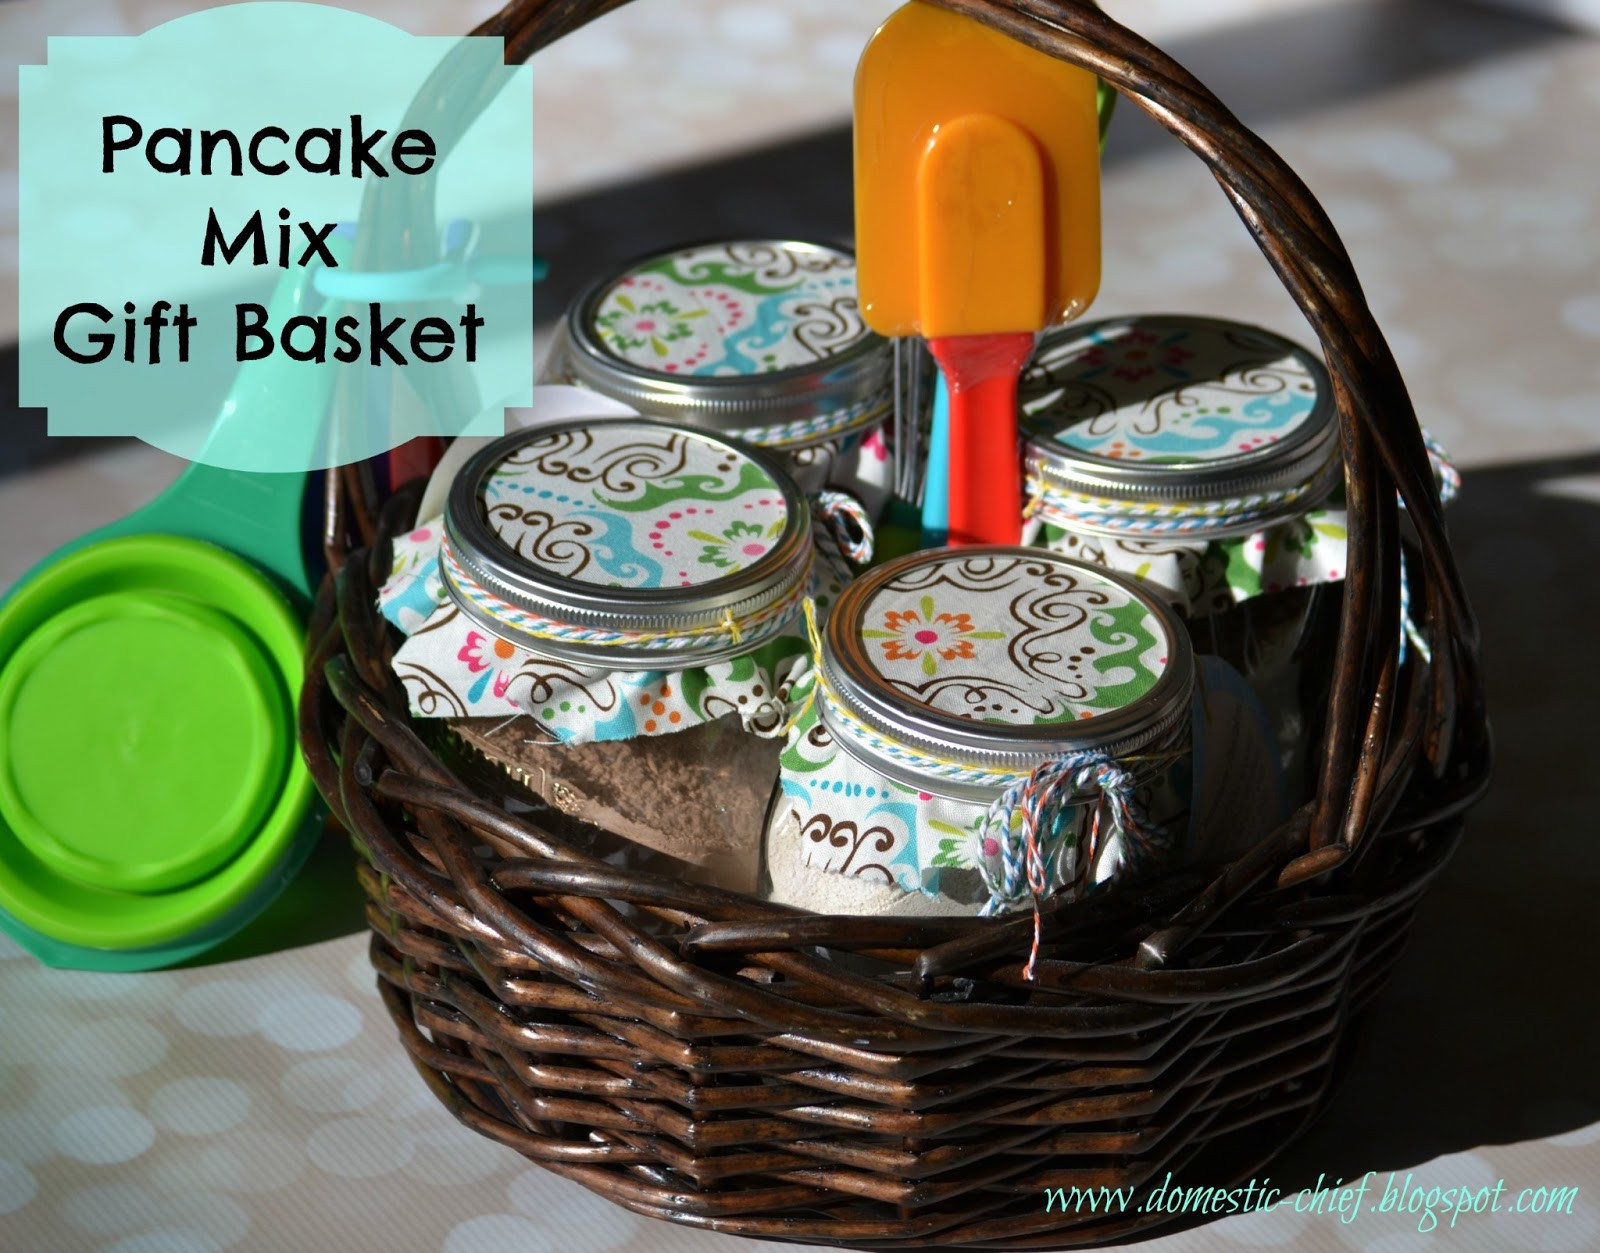 Pancake Gift Basket Ideas
 Chief Domestic ficer Pancake Mix Gift Basket